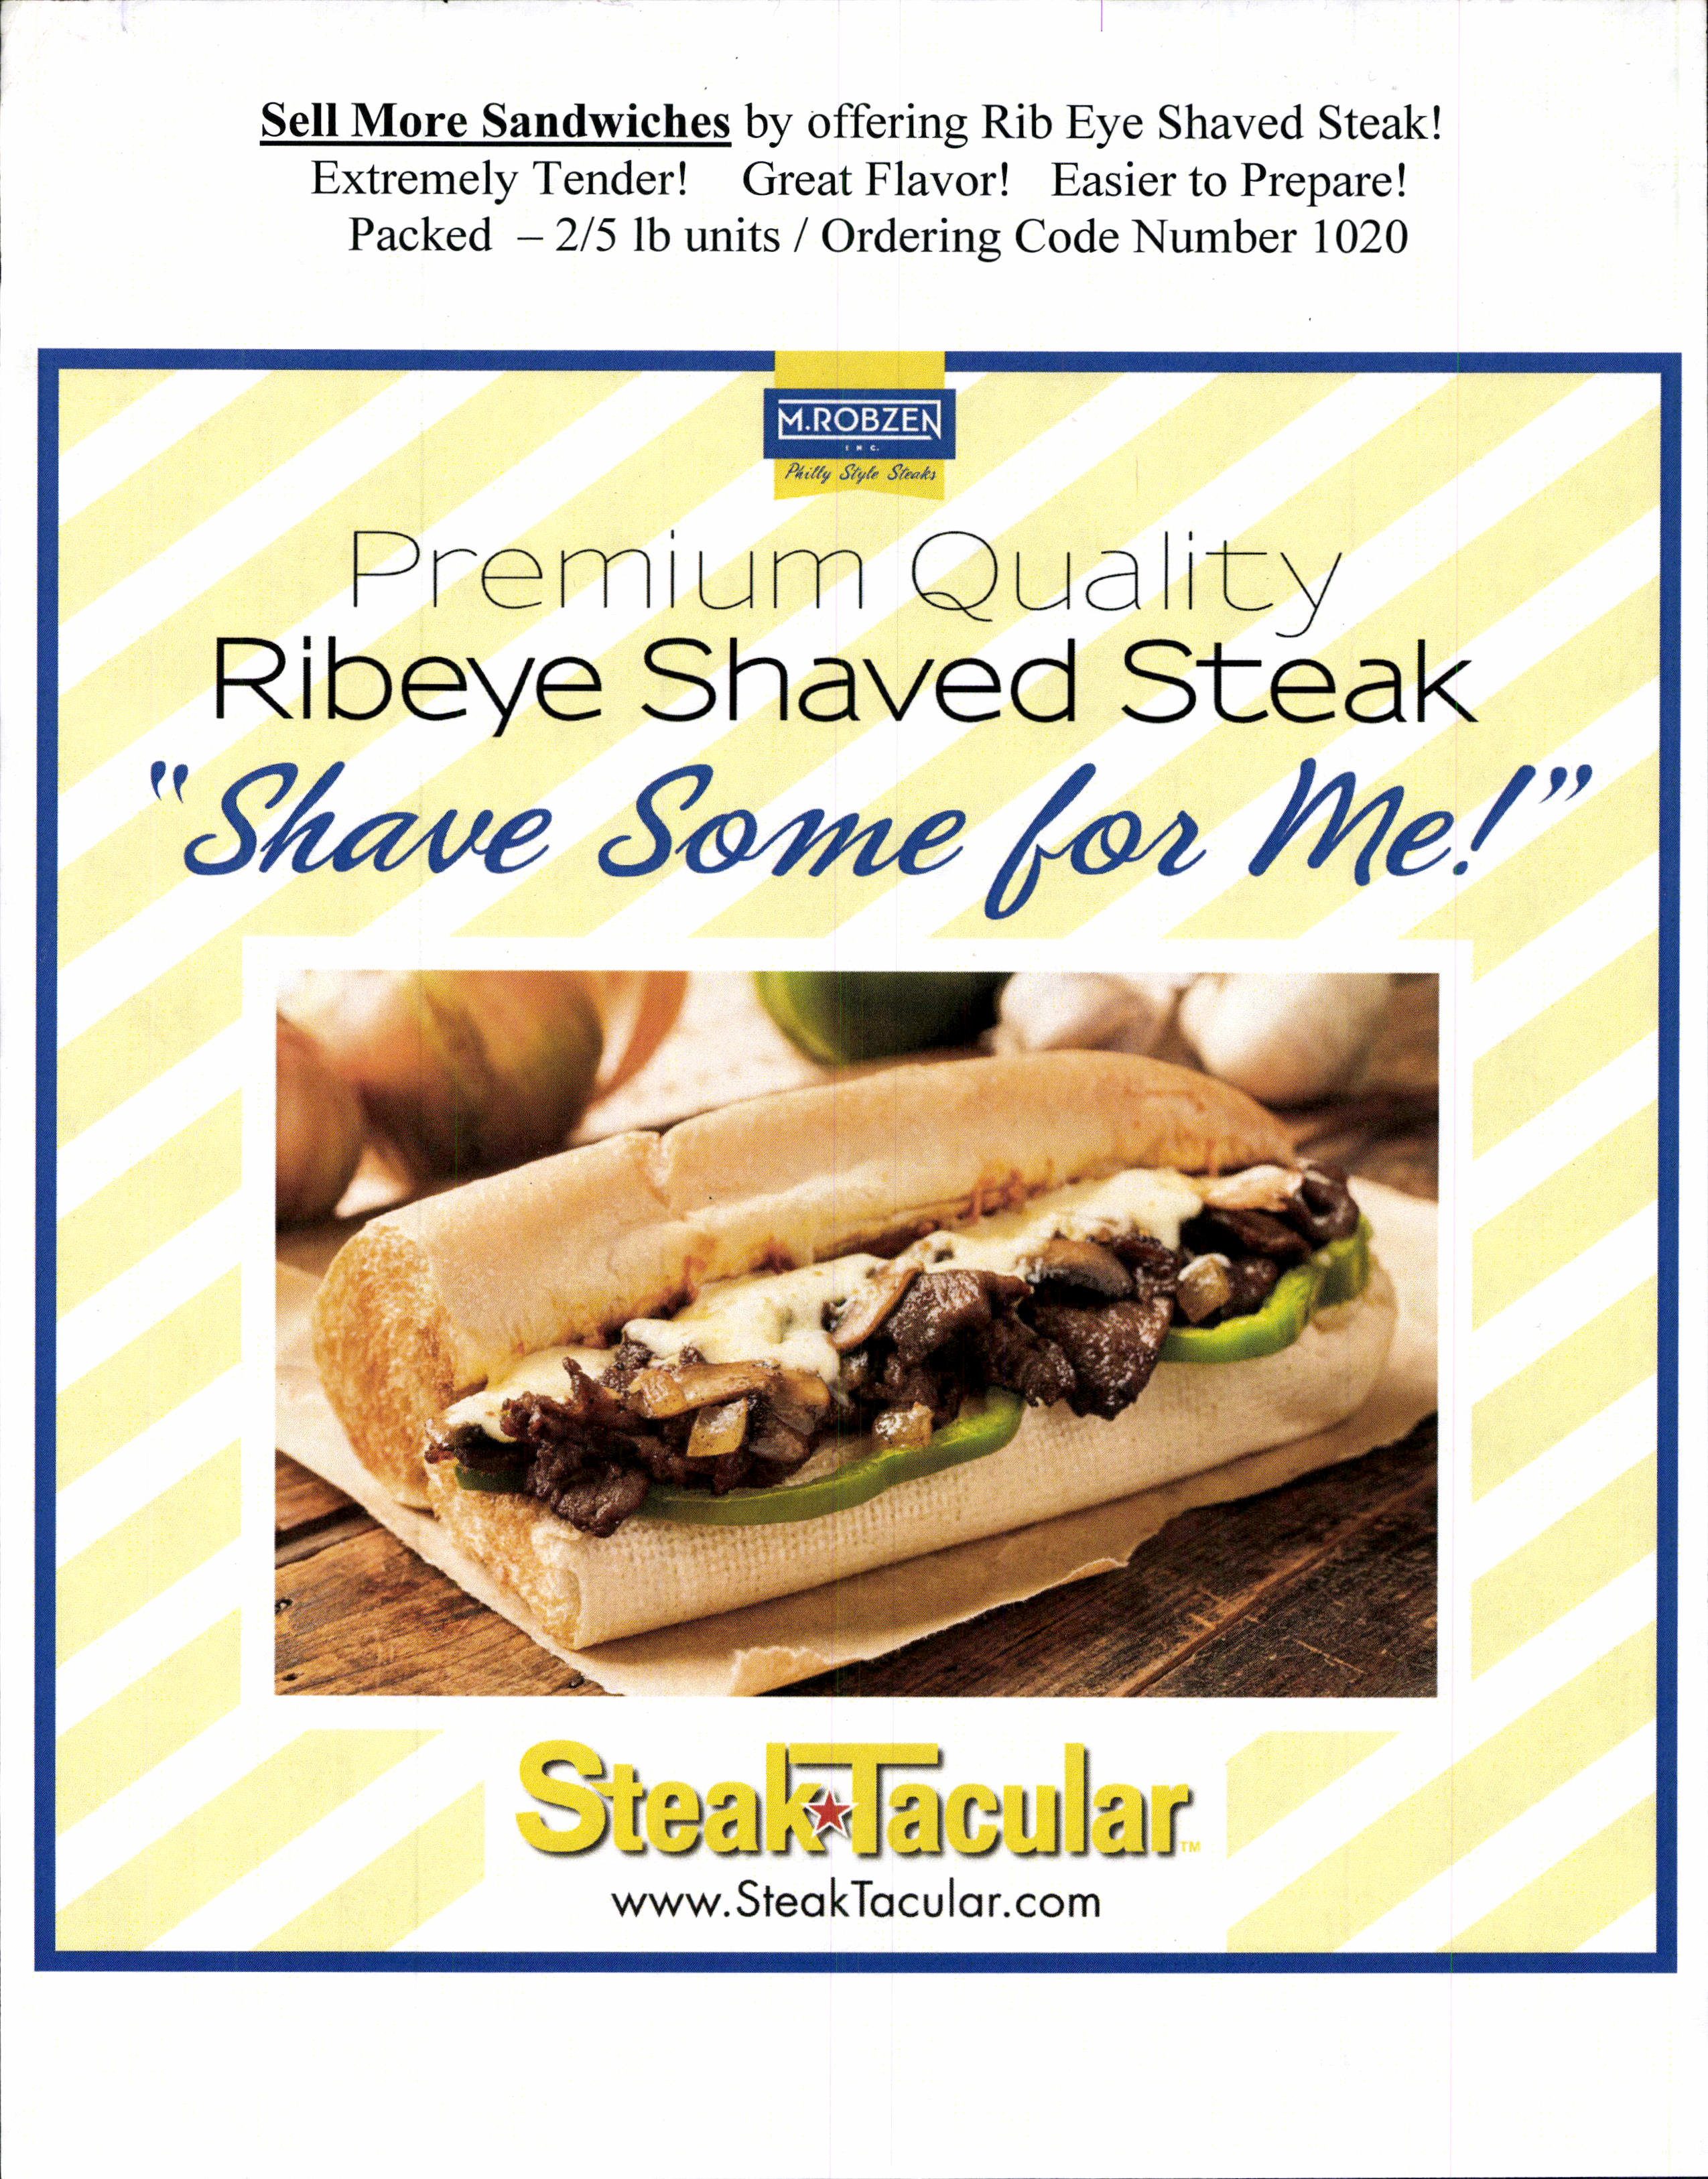 Robzen Shaved Steak - Rib Eye